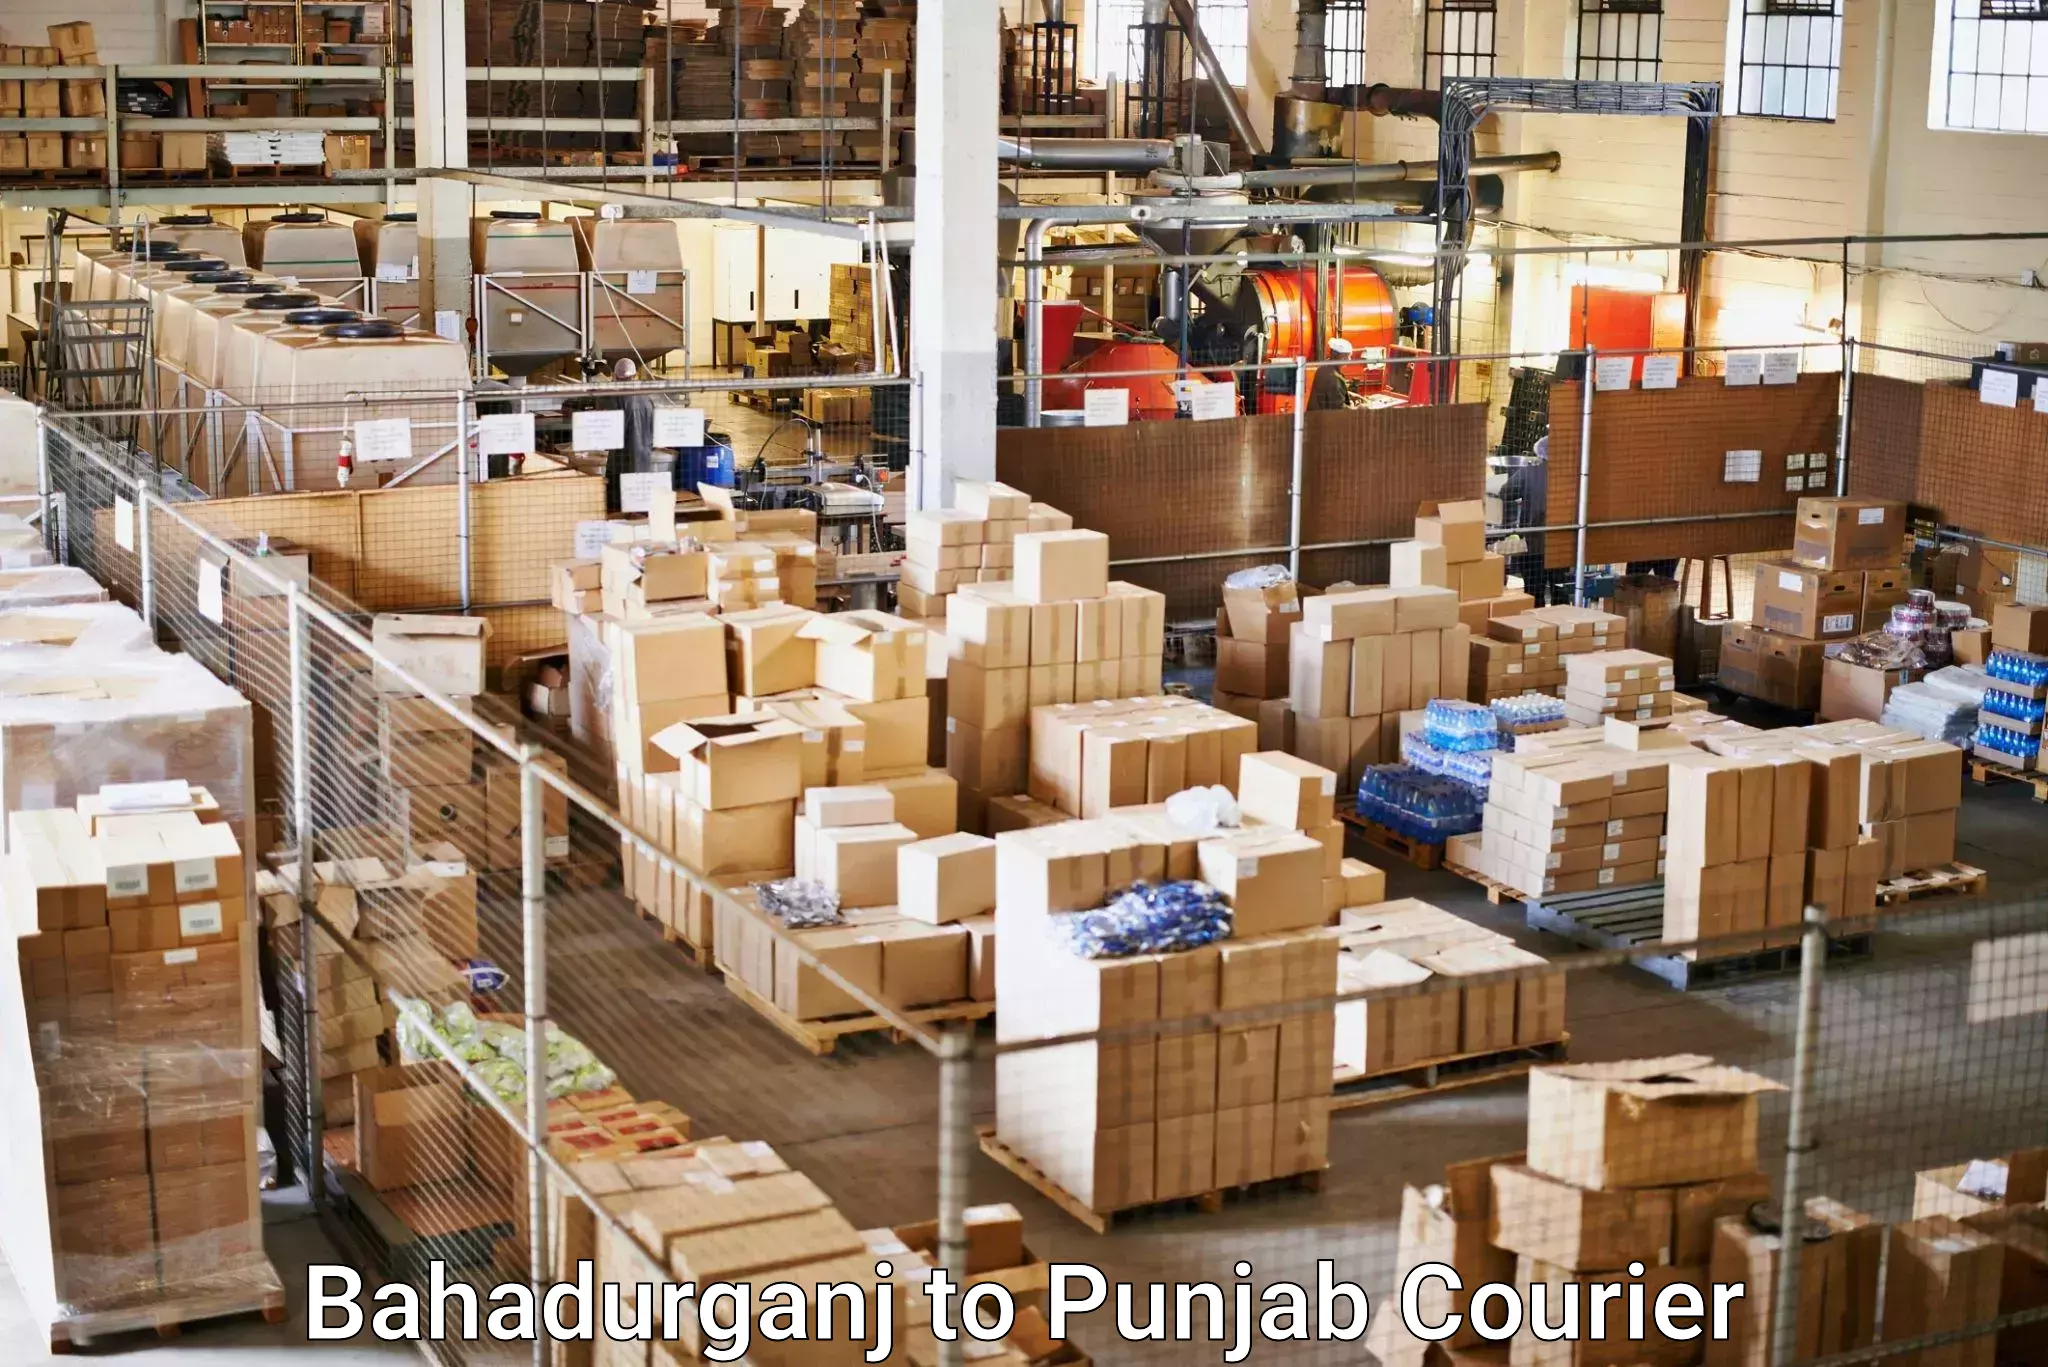 Door-to-door freight service Bahadurganj to Sirhind Fatehgarh